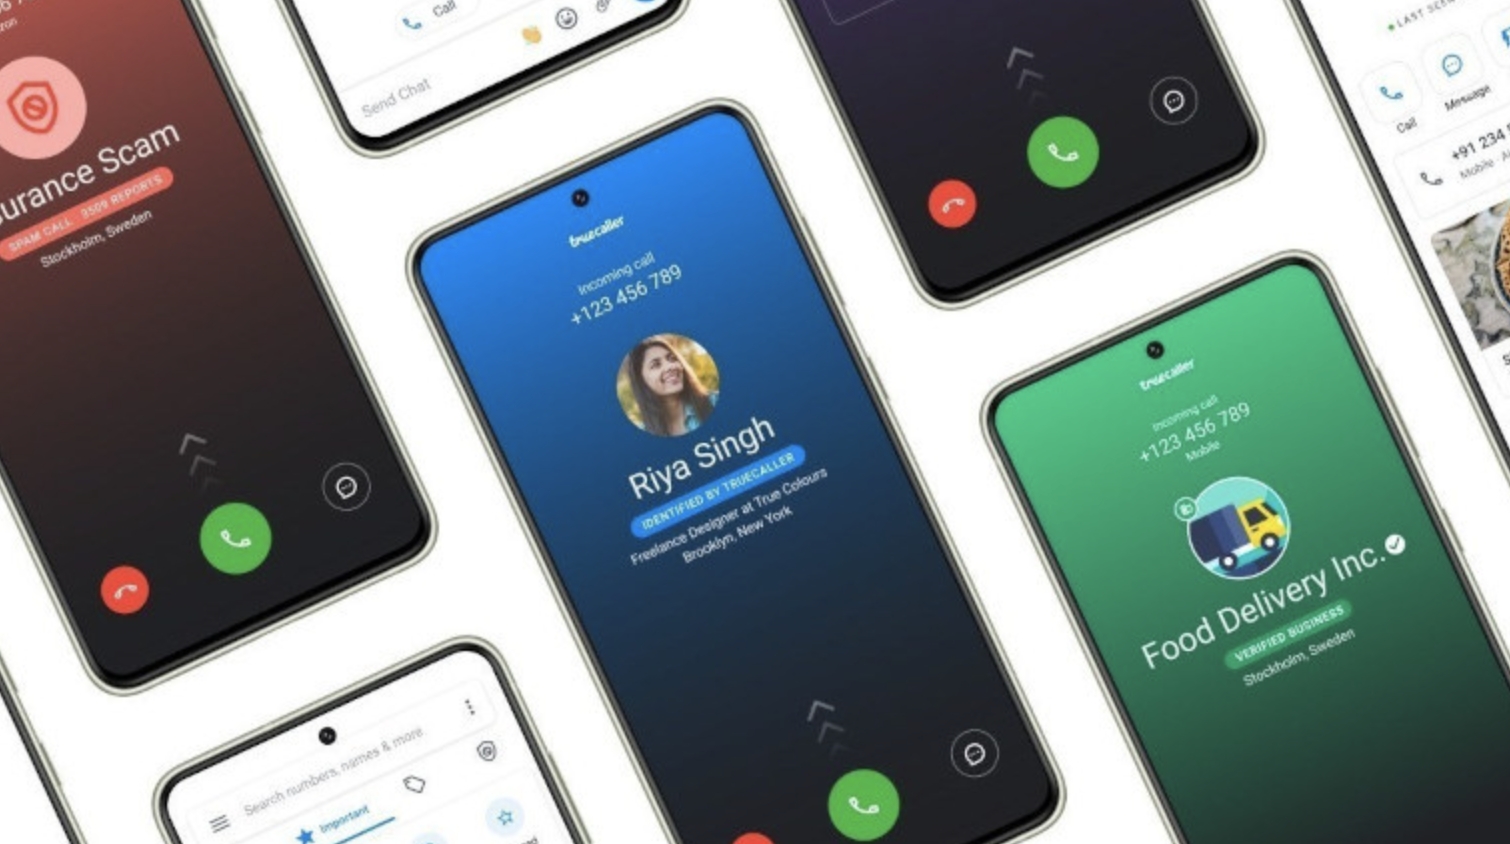 Truecaller bude brzy fungovat s WhatsApp a dalšími aplikacemi pro zasílání zpráv